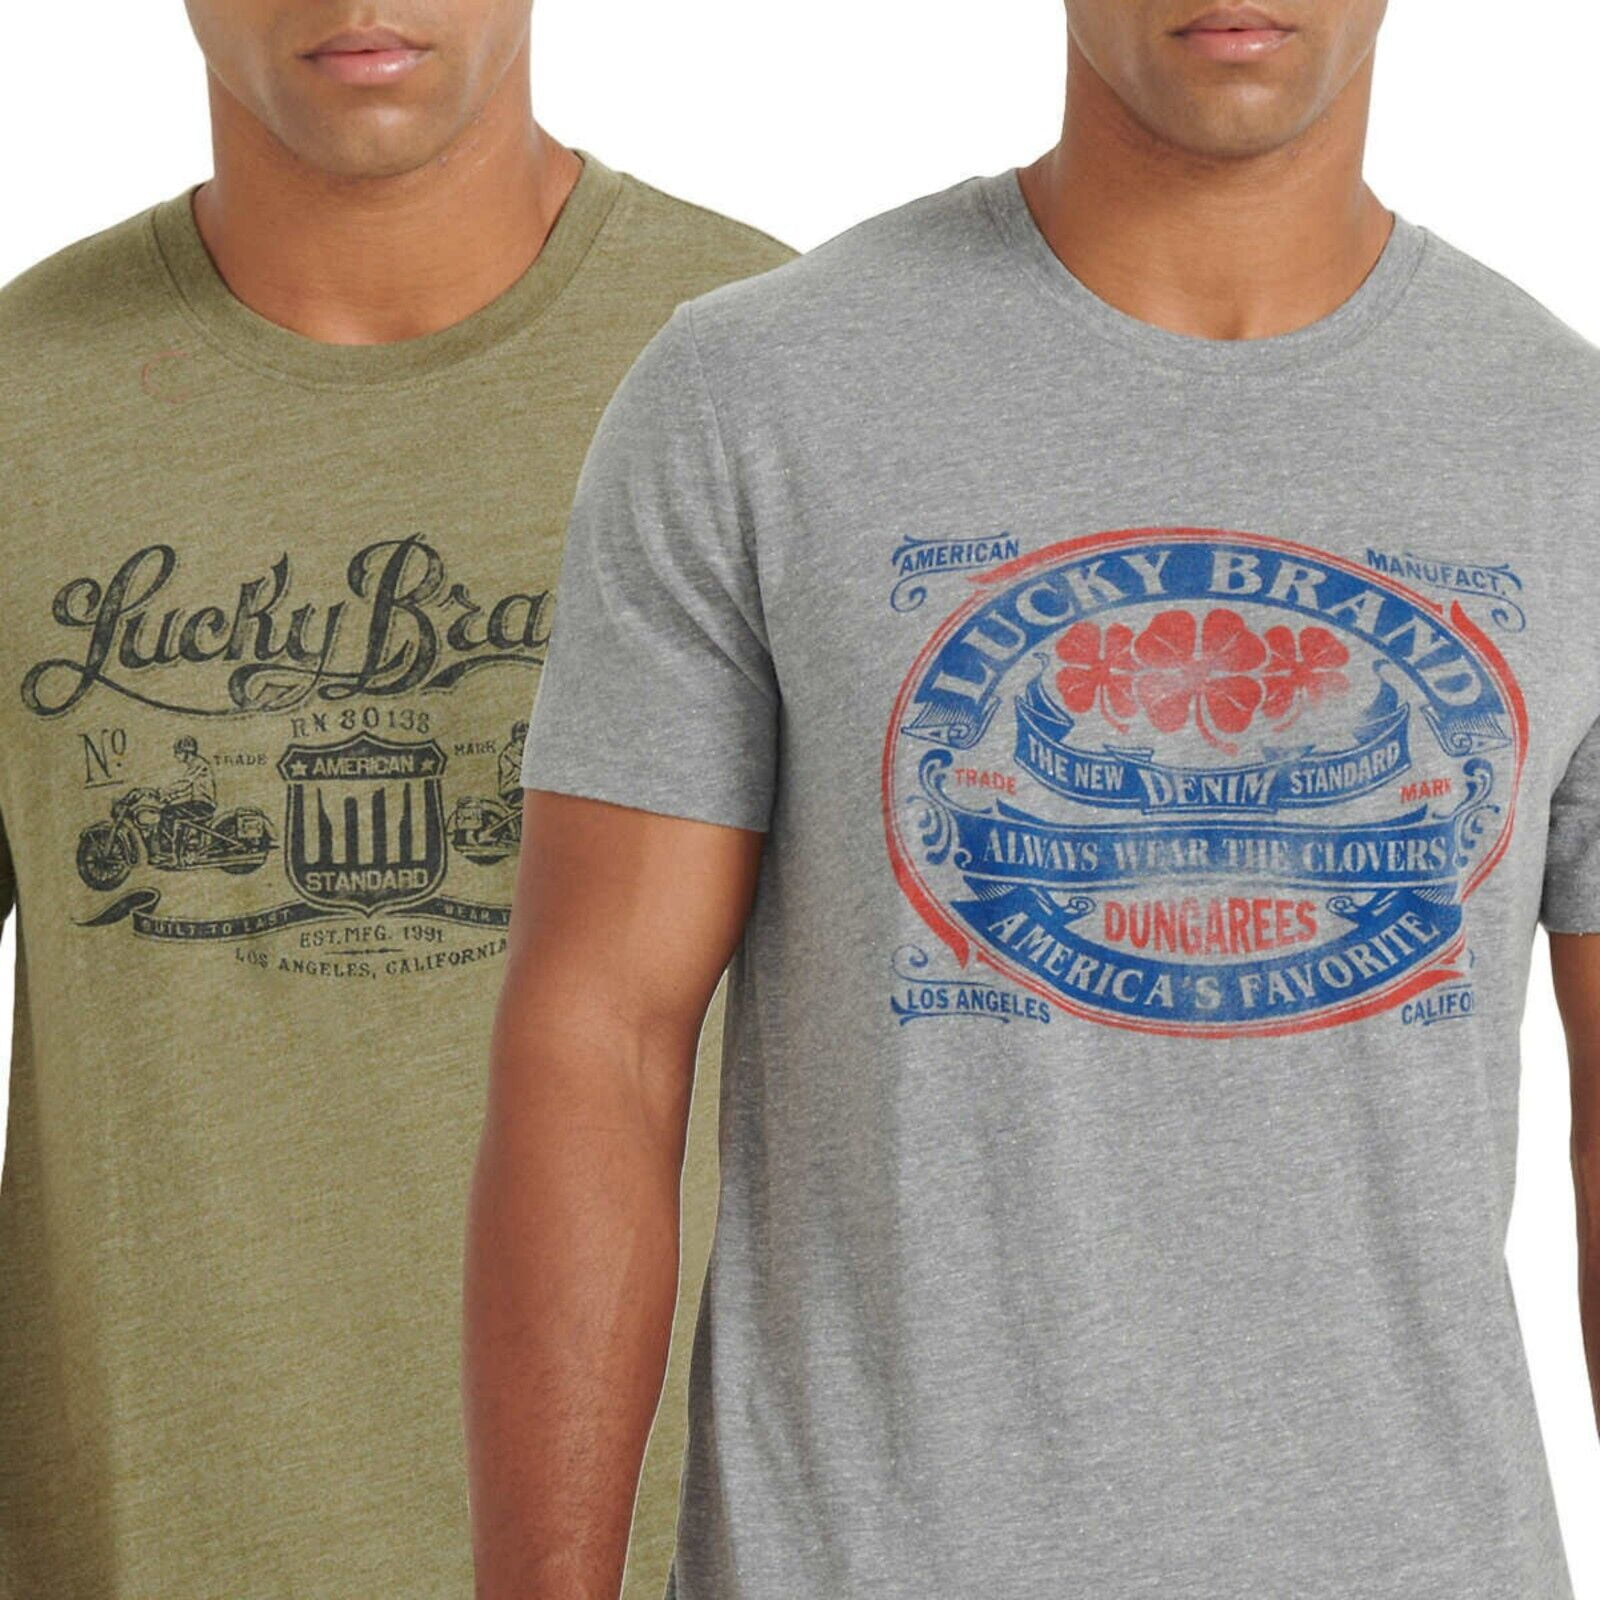 Print Tee 2-Pack T-Shirt Jersey Short Lucky Blend Brand Soft Men\'s Cotton Sleeve Logo Graphic